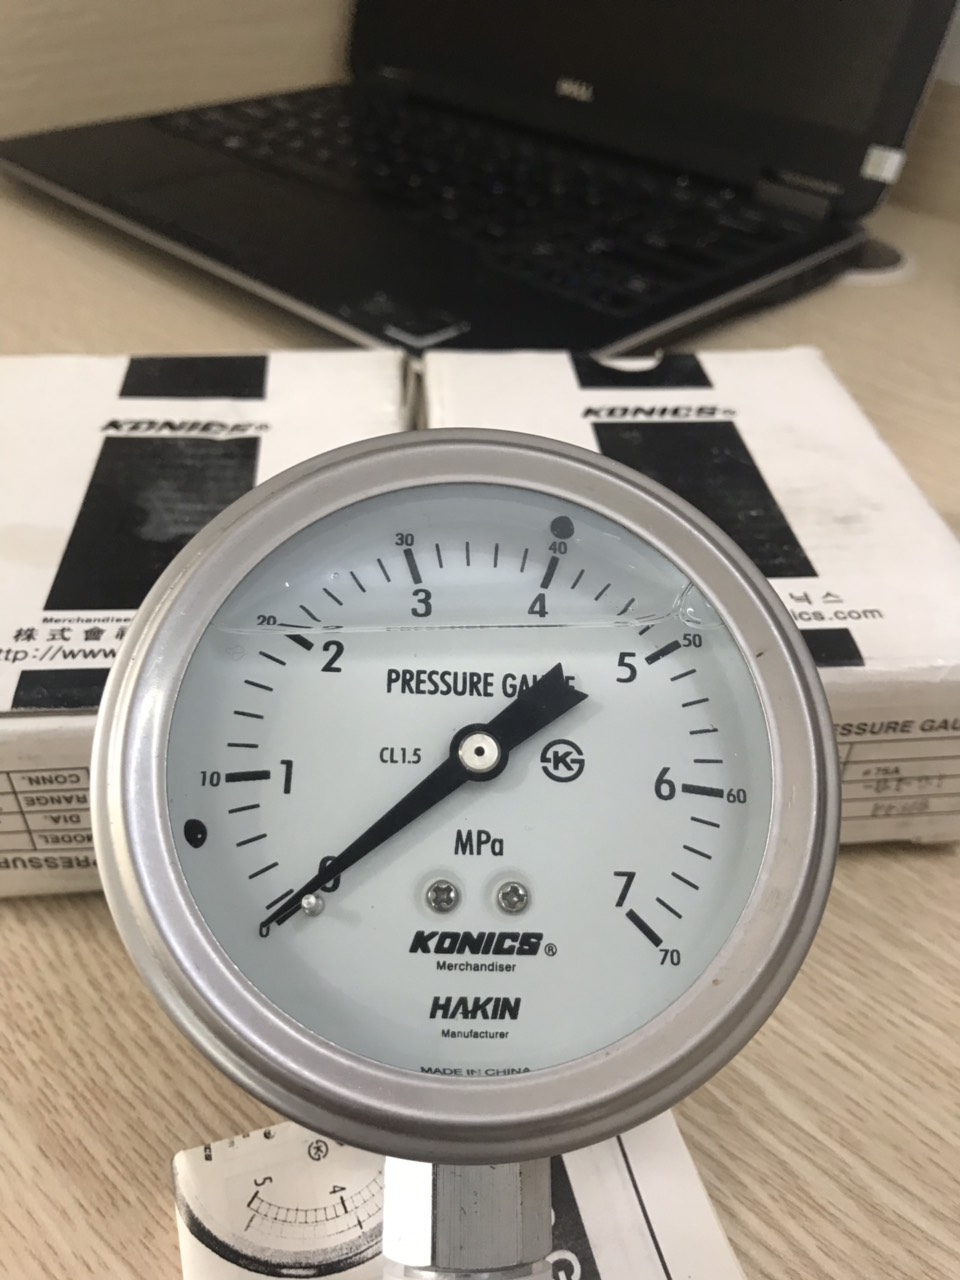 đồng hồ đo áp suất konics 7MPa